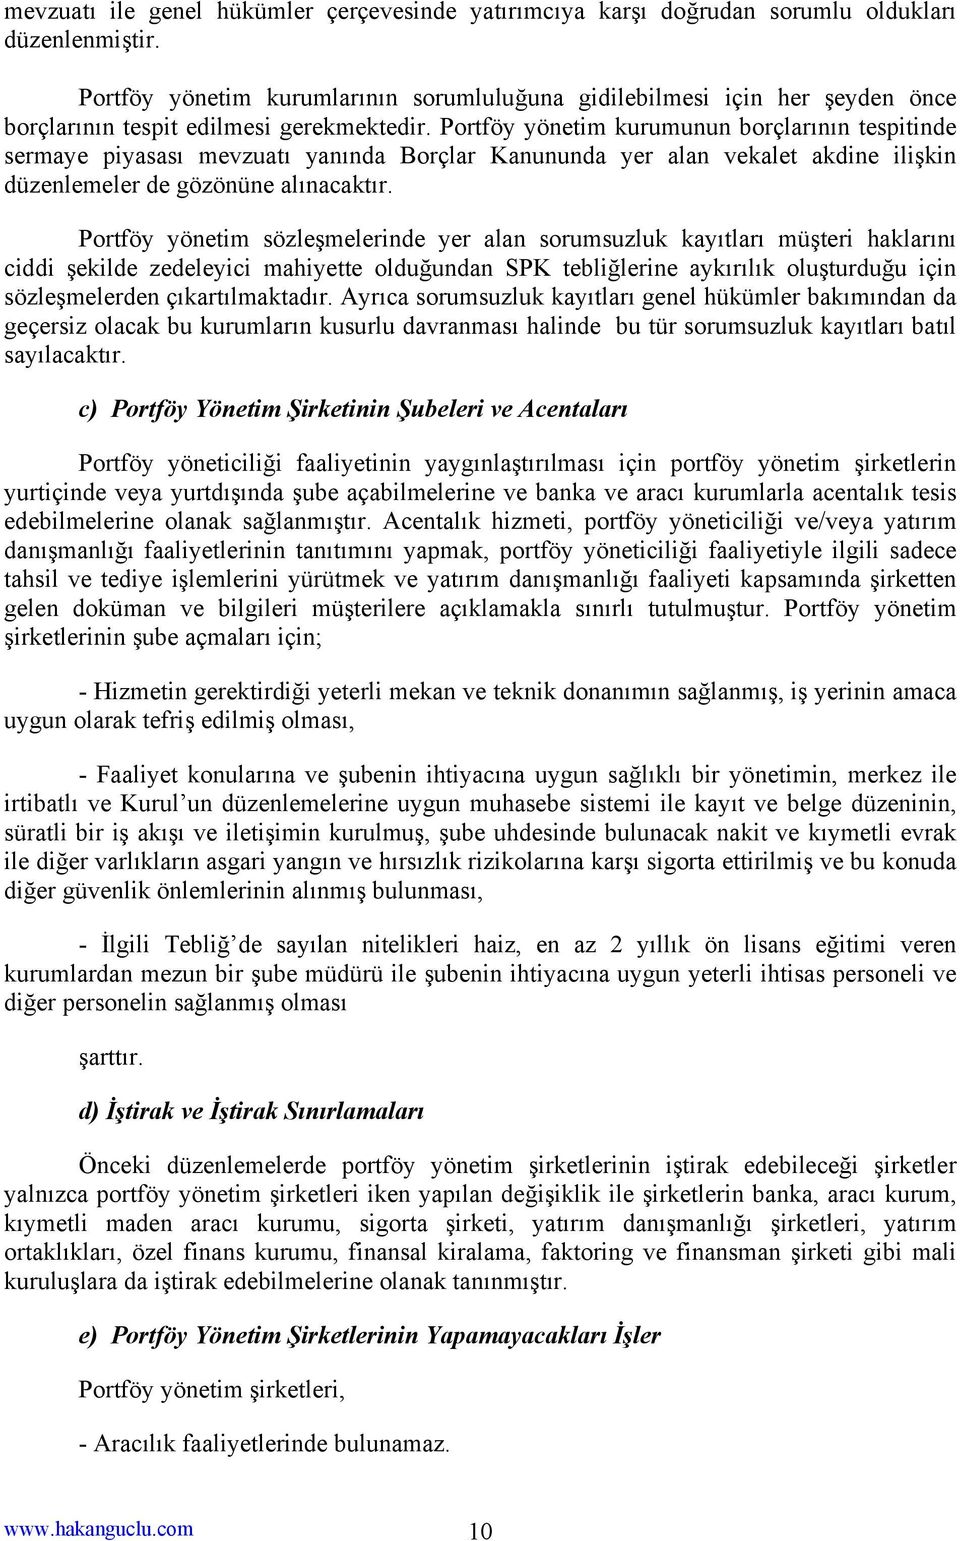 Portföy yönetim kurumunun borçlarının tespitinde sermaye piyasası mevzuatı yanında Borçlar Kanununda yer alan vekalet akdine ilişkin düzenlemeler de gözönüne alınacaktır.